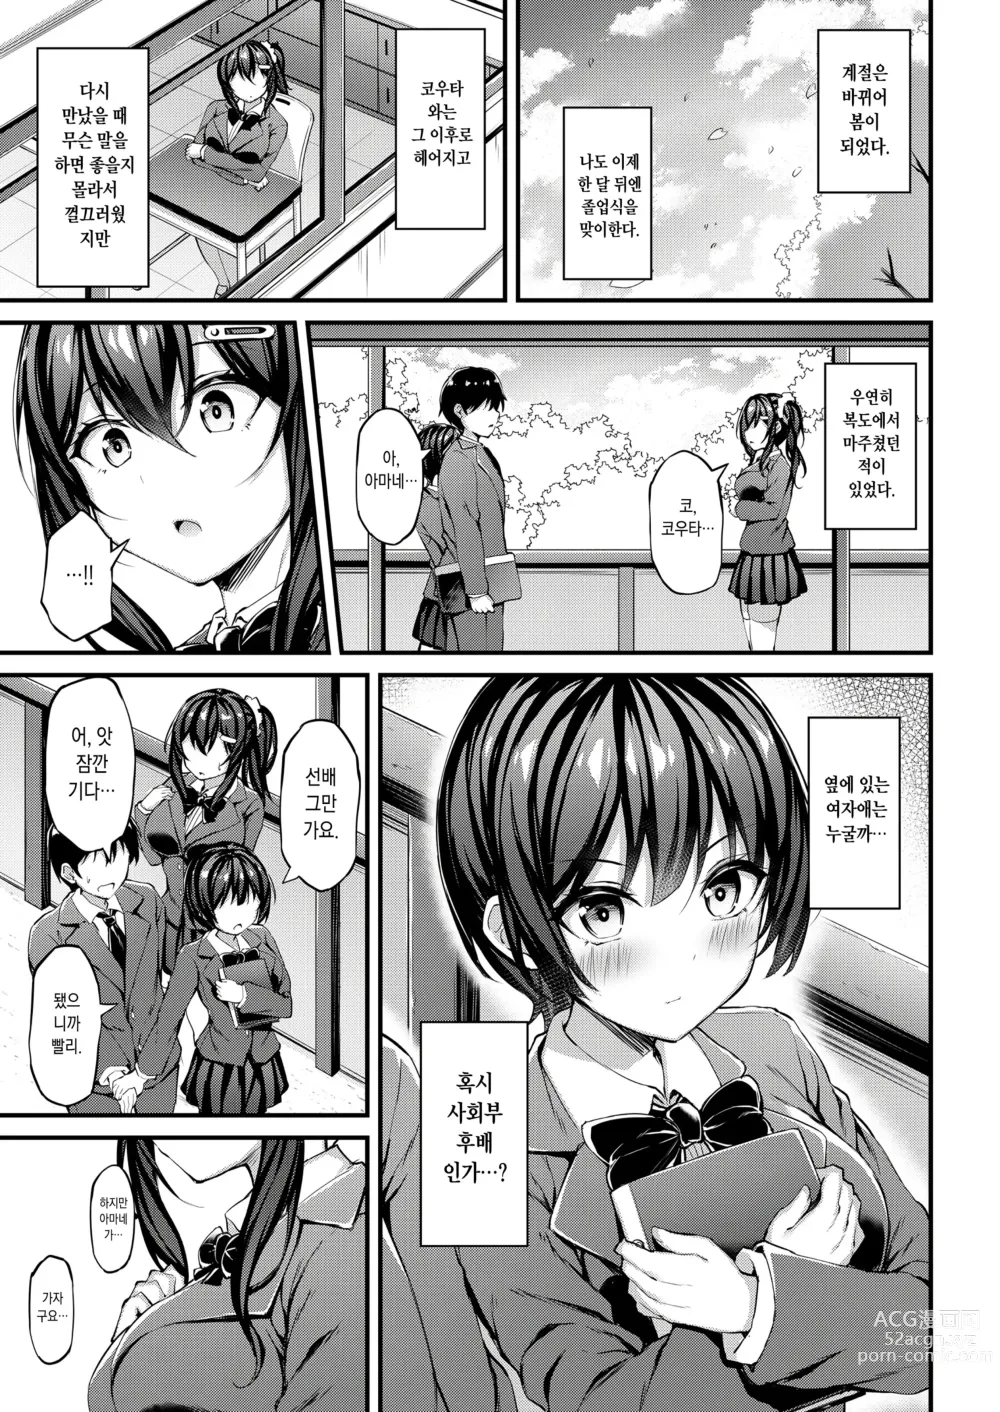 Page 22 of doujinshi 그녀가 트레이닝복을 입는 이유 -내 아저씨에게 바치는 성춘색 트레이닝복-